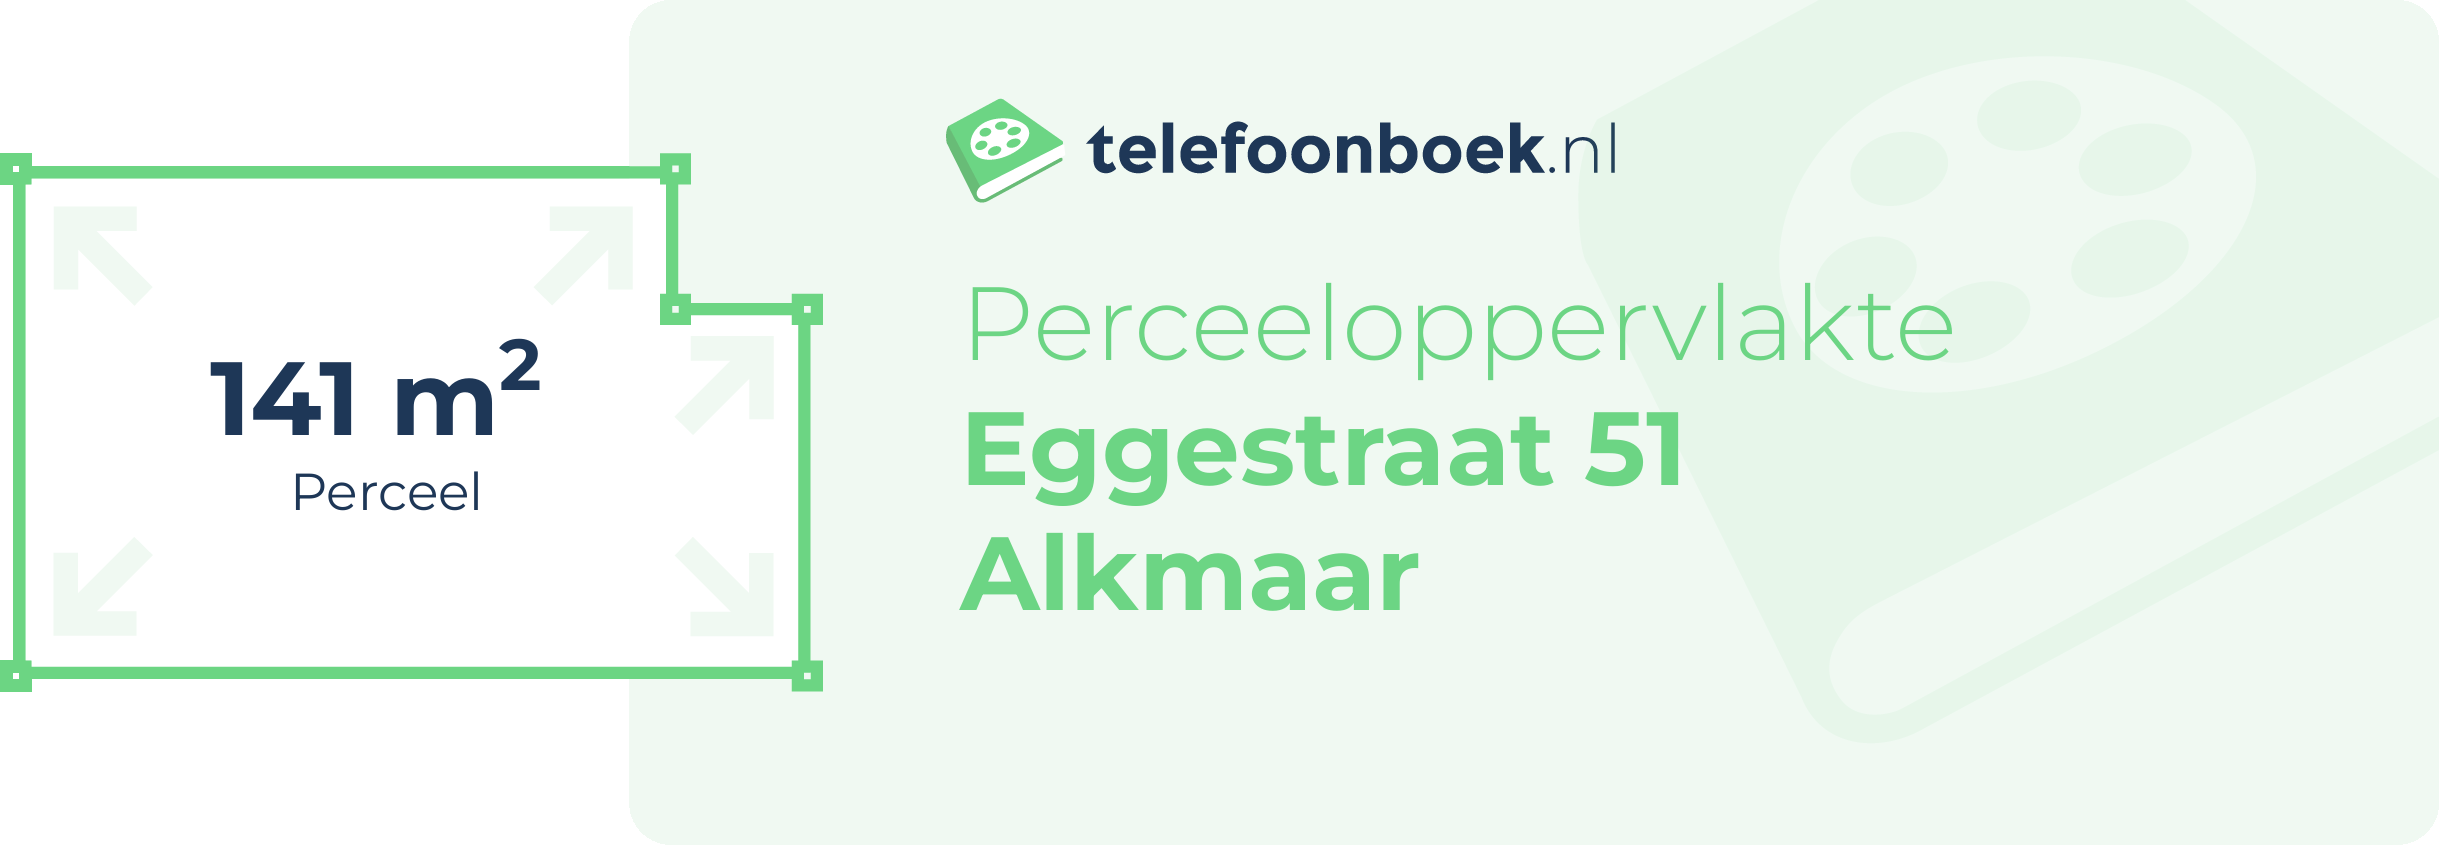 Perceeloppervlakte Eggestraat 51 Alkmaar